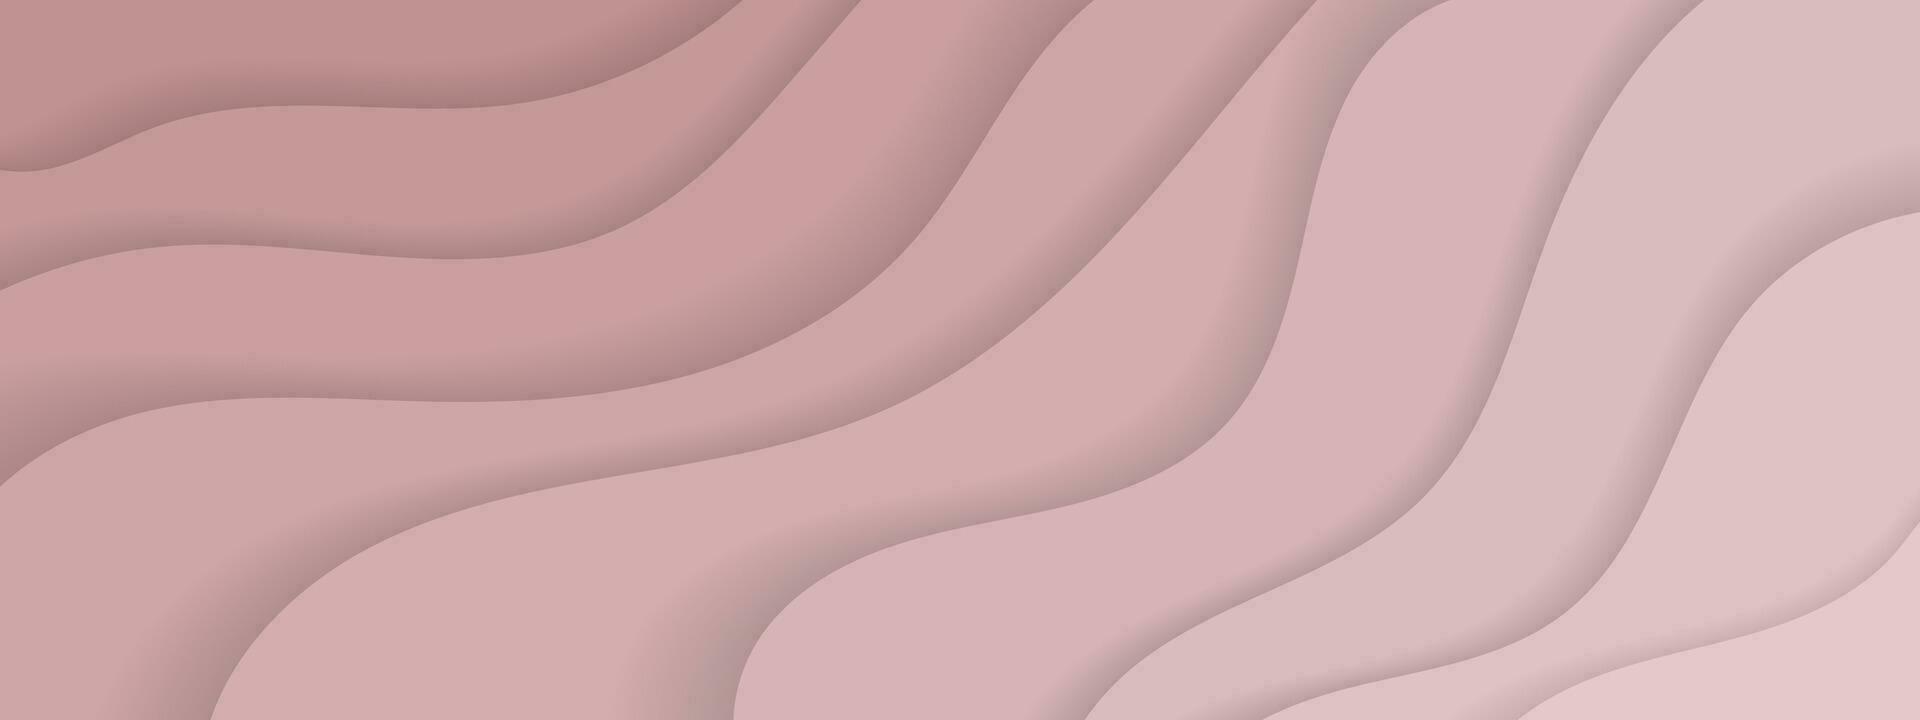 sfondo vettoriale rosa chiaro con linee ironiche. illustrazione gradiente in stile semplice con fiocchi. modello per opuscoli aziendali, volantini